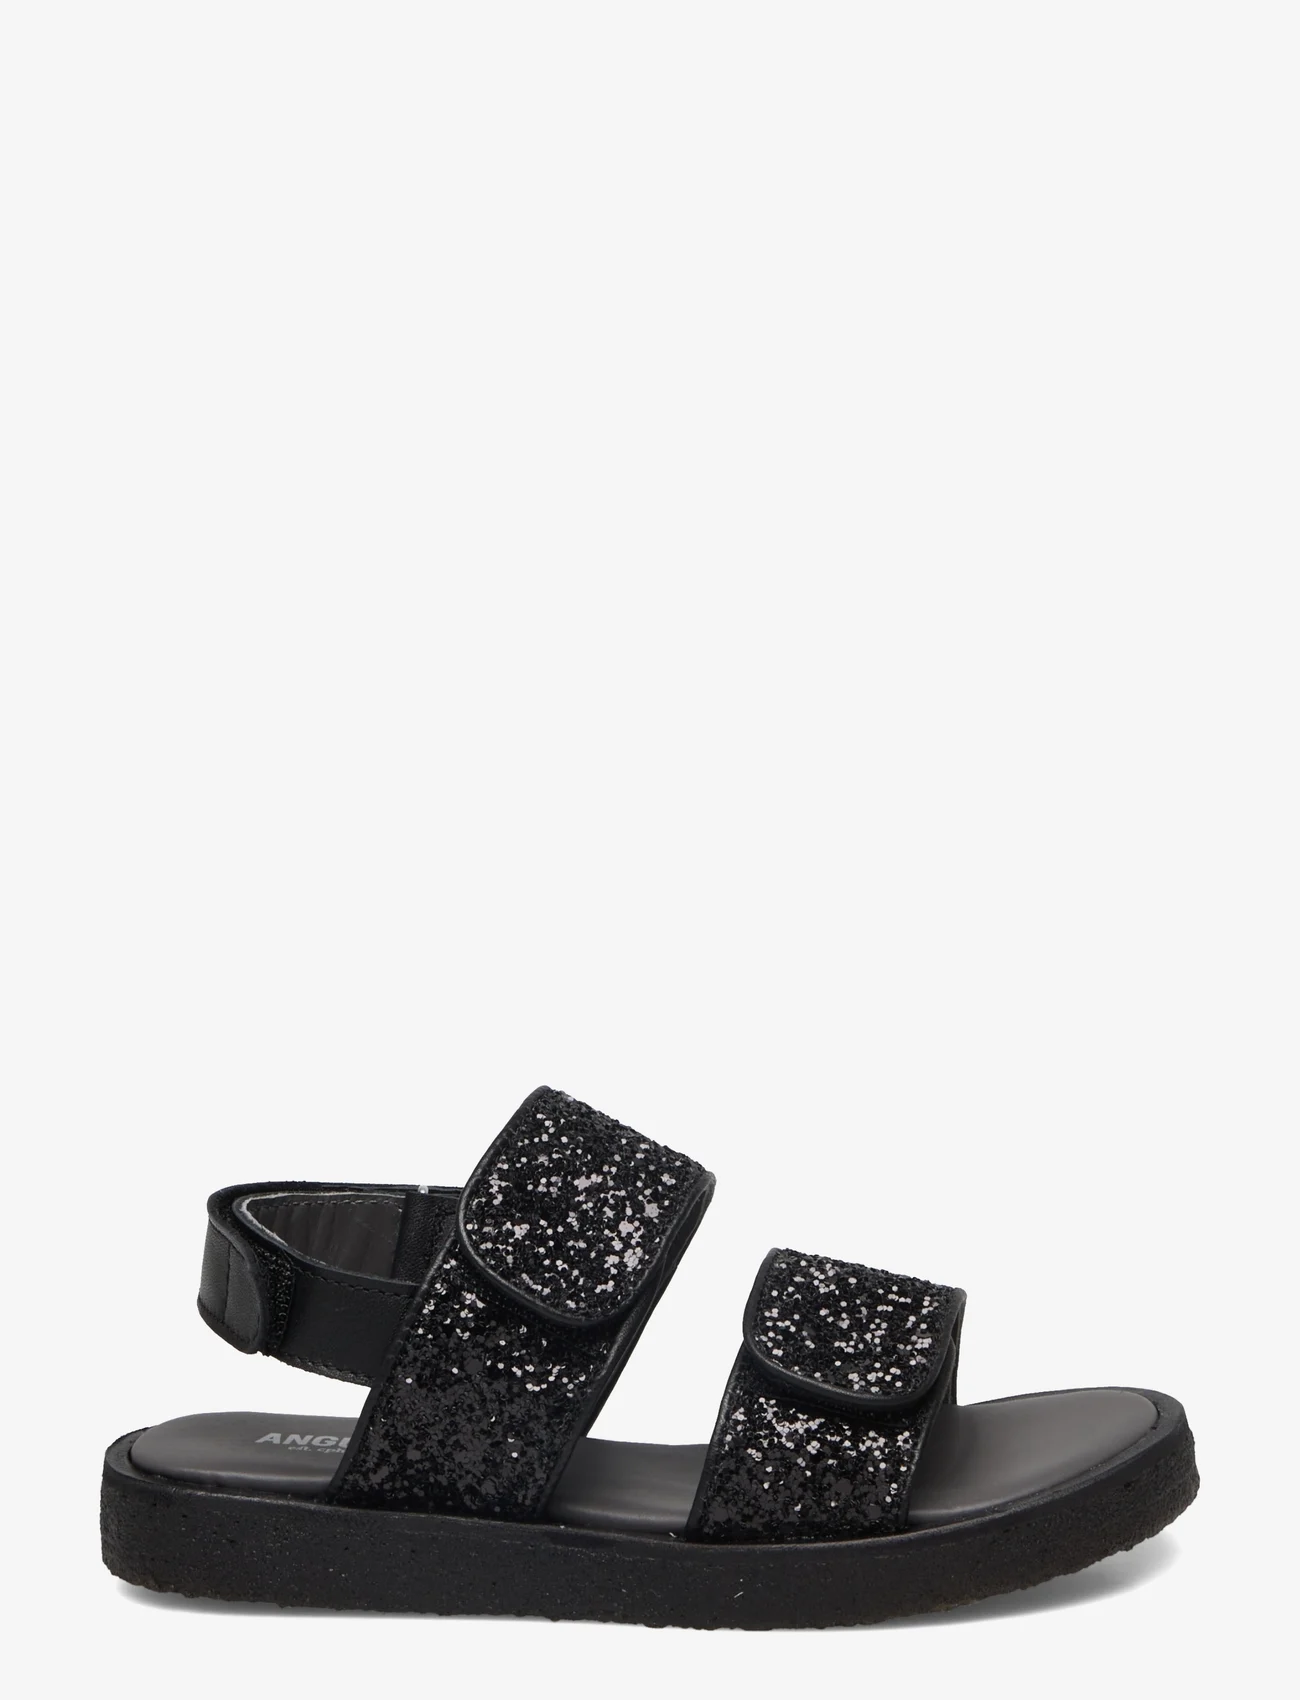 ANGULUS - Sandals - flat - open toe - op - letnie okazje - 1604/2486 black/black glitter - 1